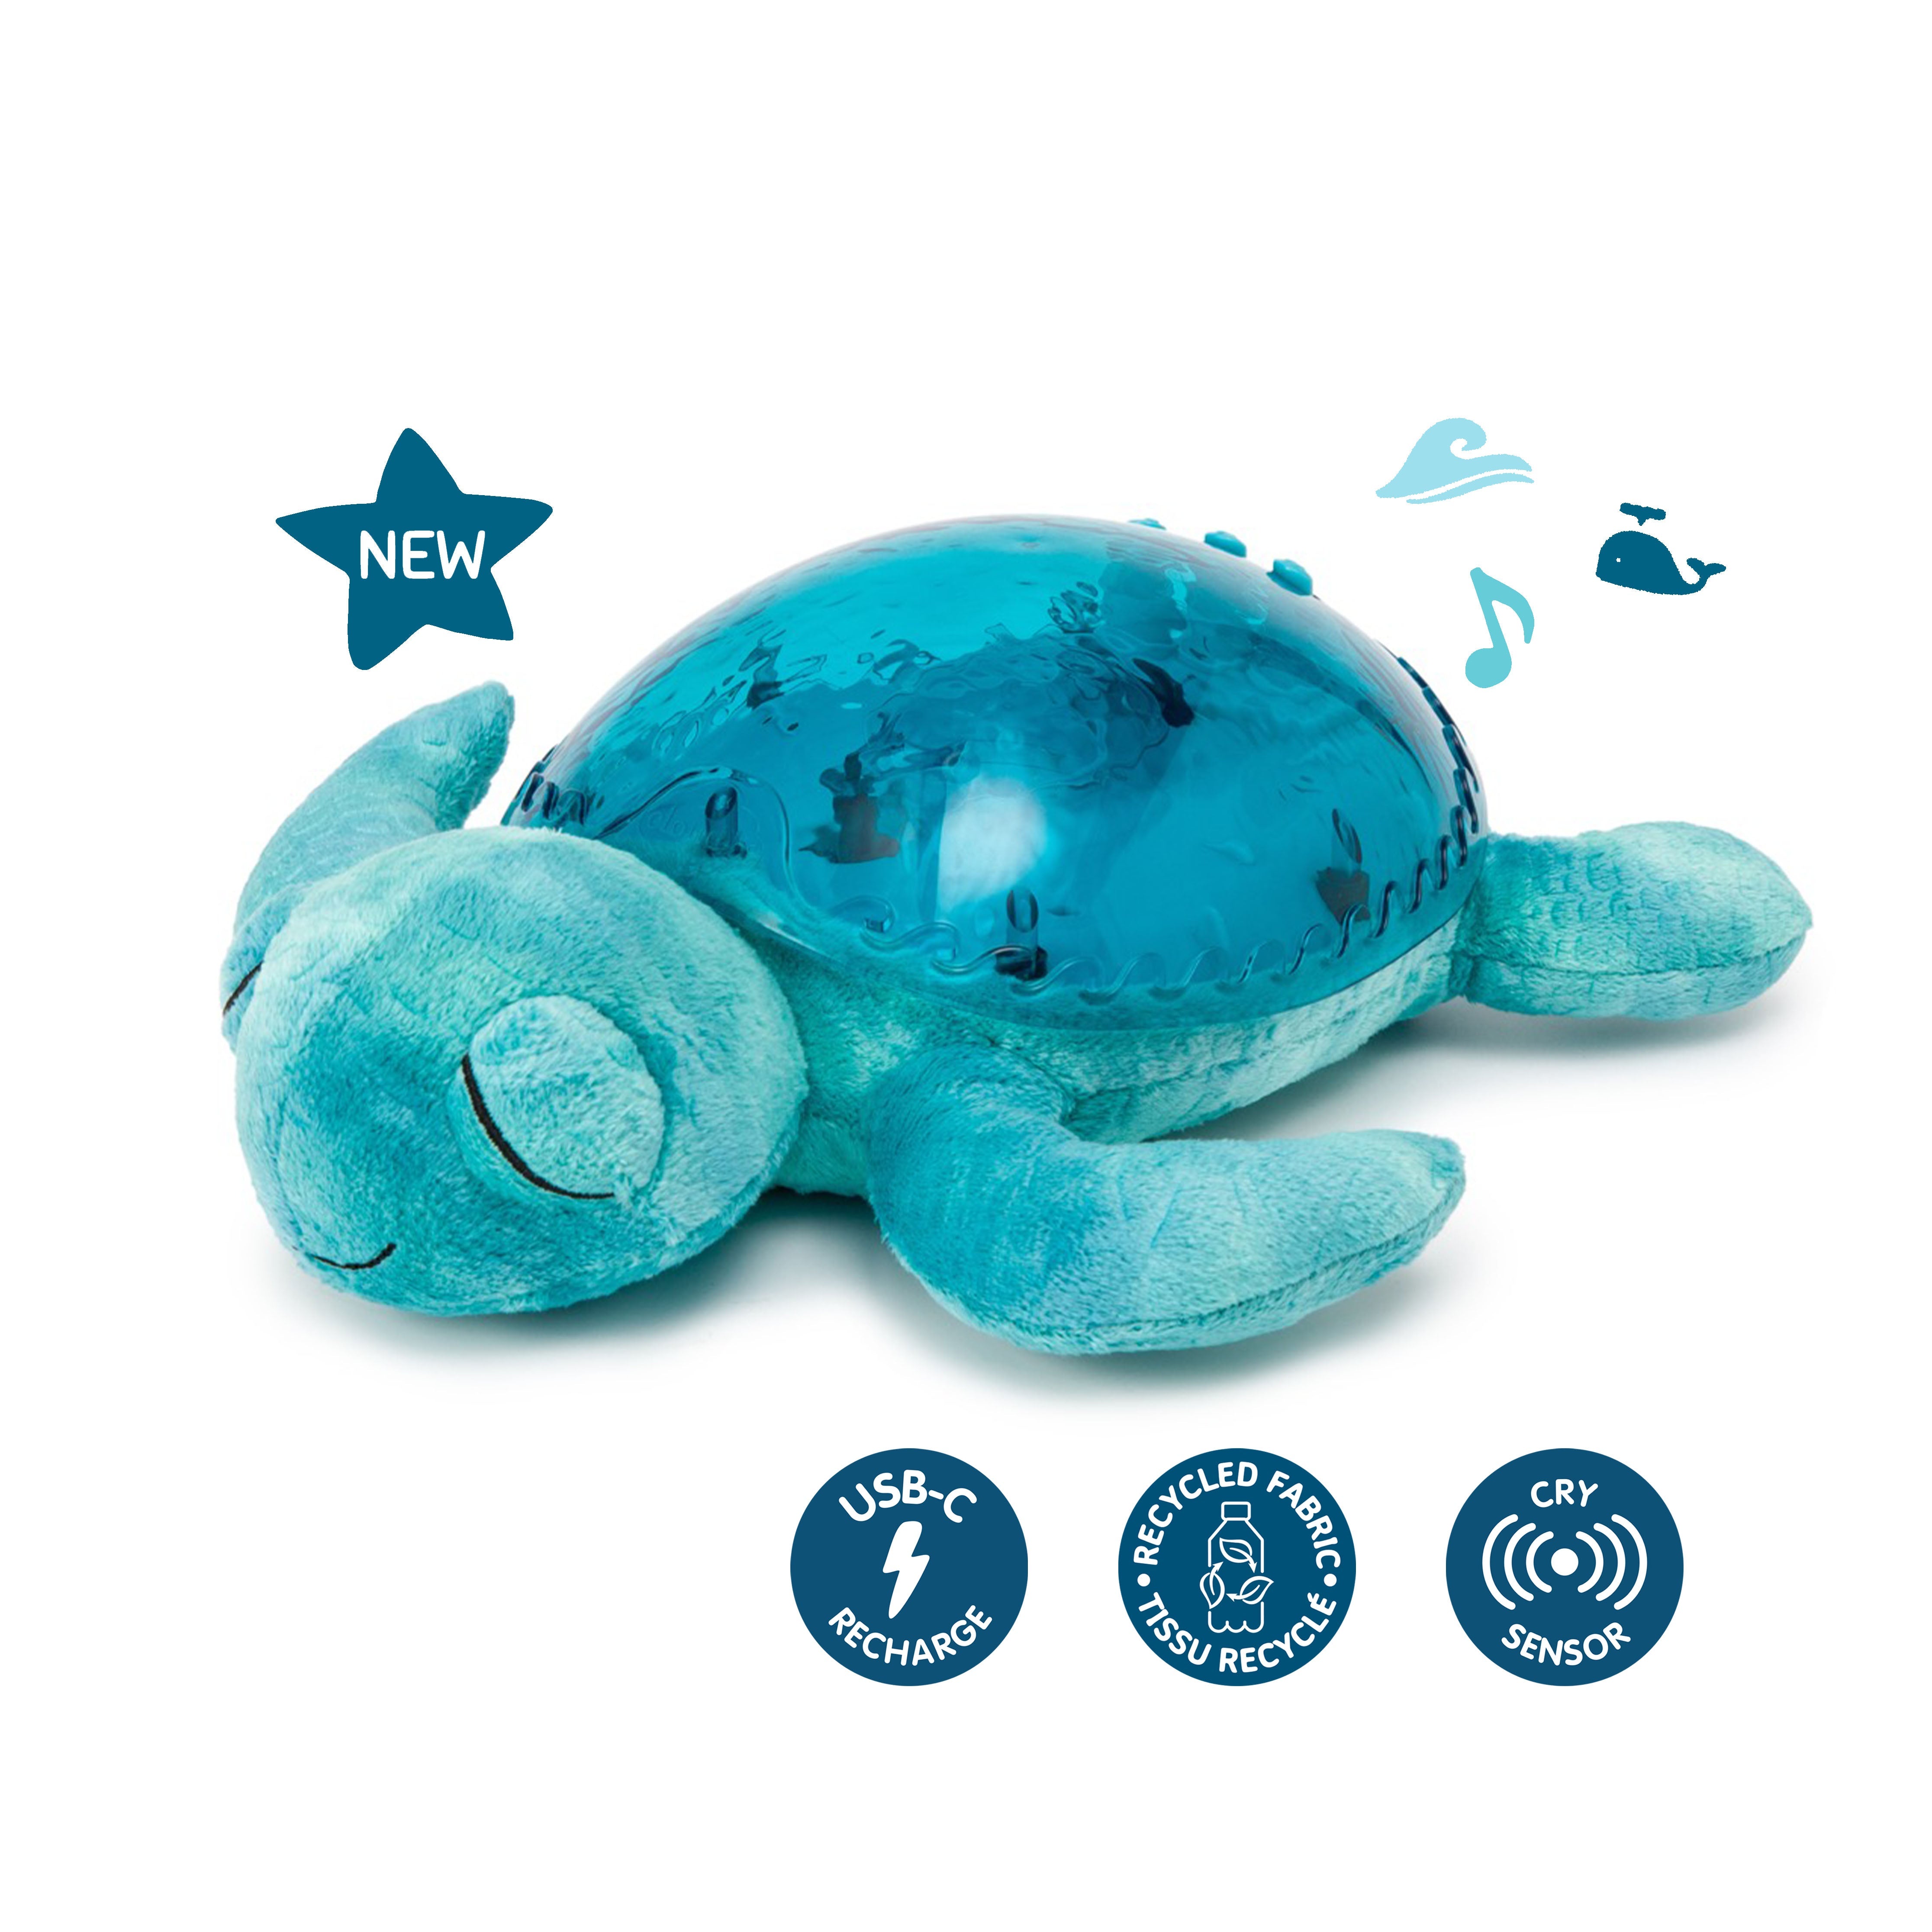 Tranquil Turtle™ Ricaricabile - Aqua